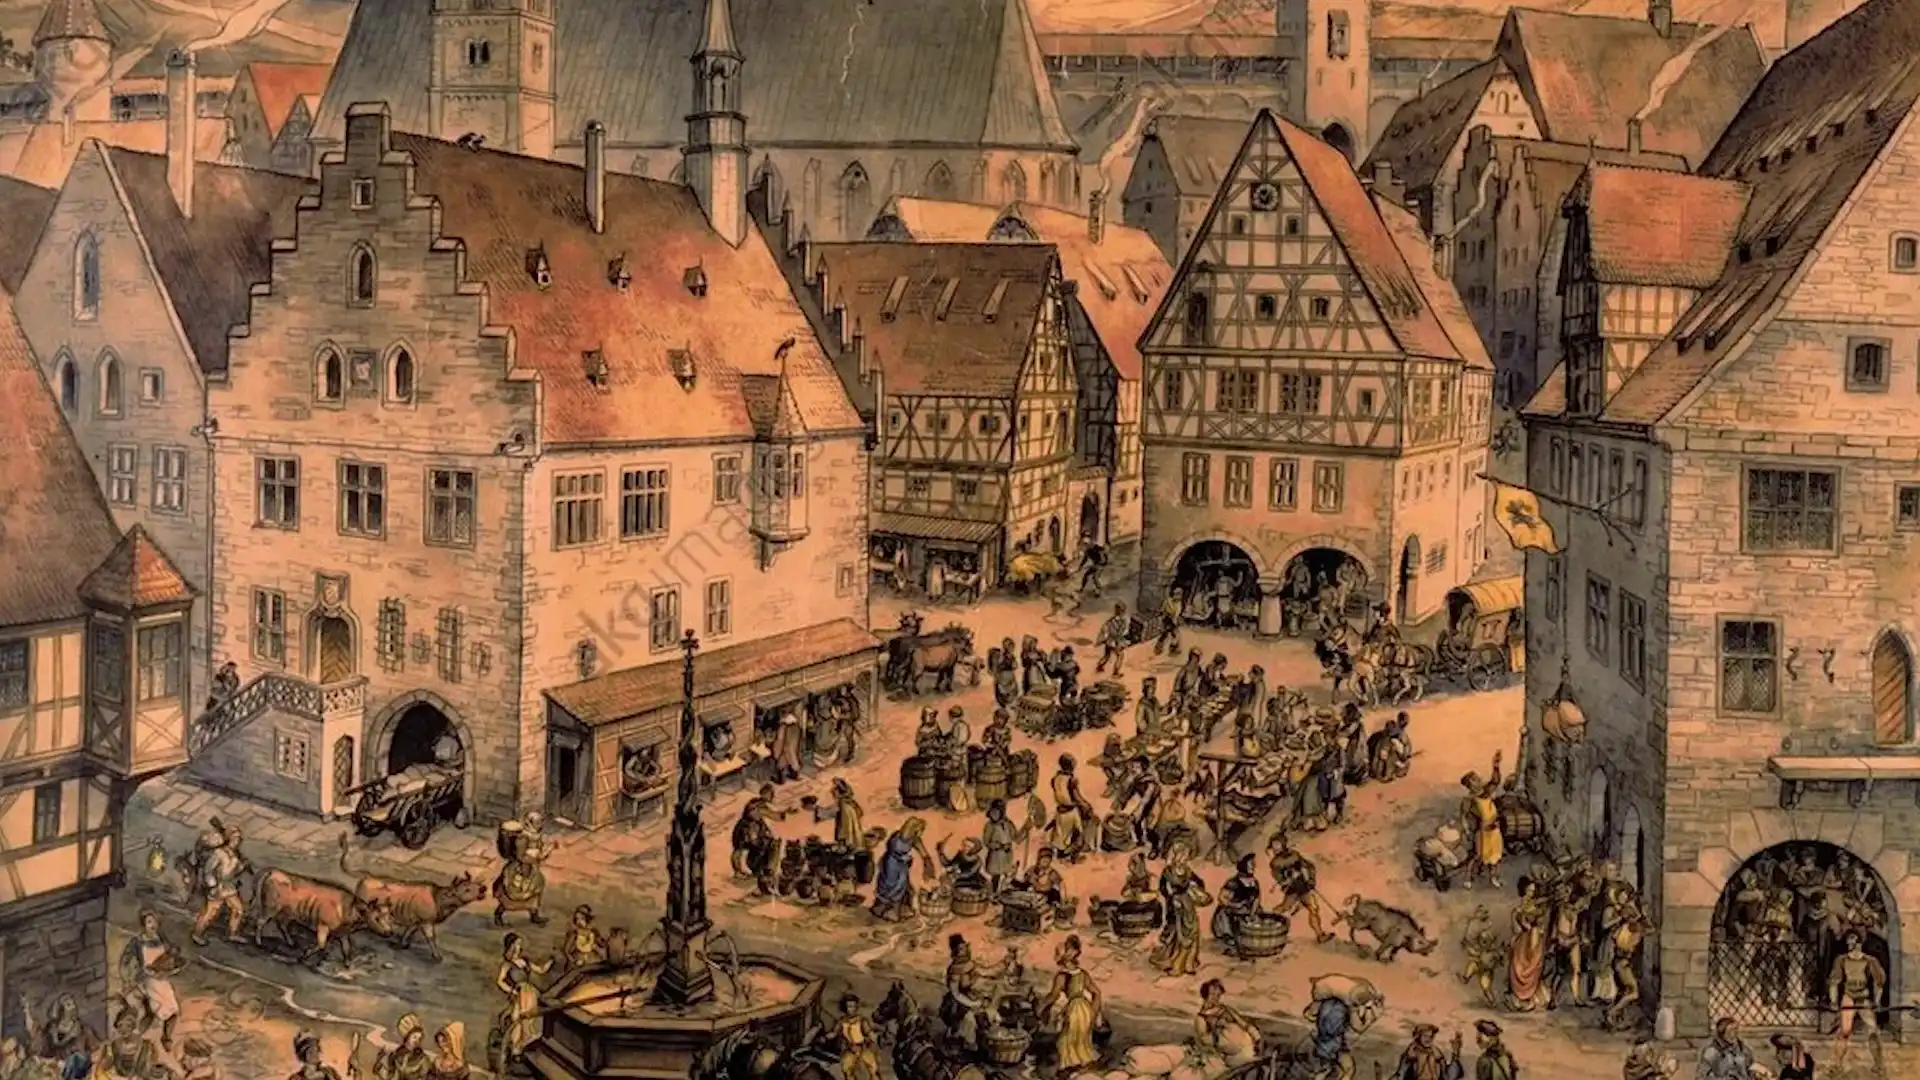 10 16 века. Средневековый город Англии 13 век. Аугсбург средние века. Европа 16 век город. Фламандия средневековье.